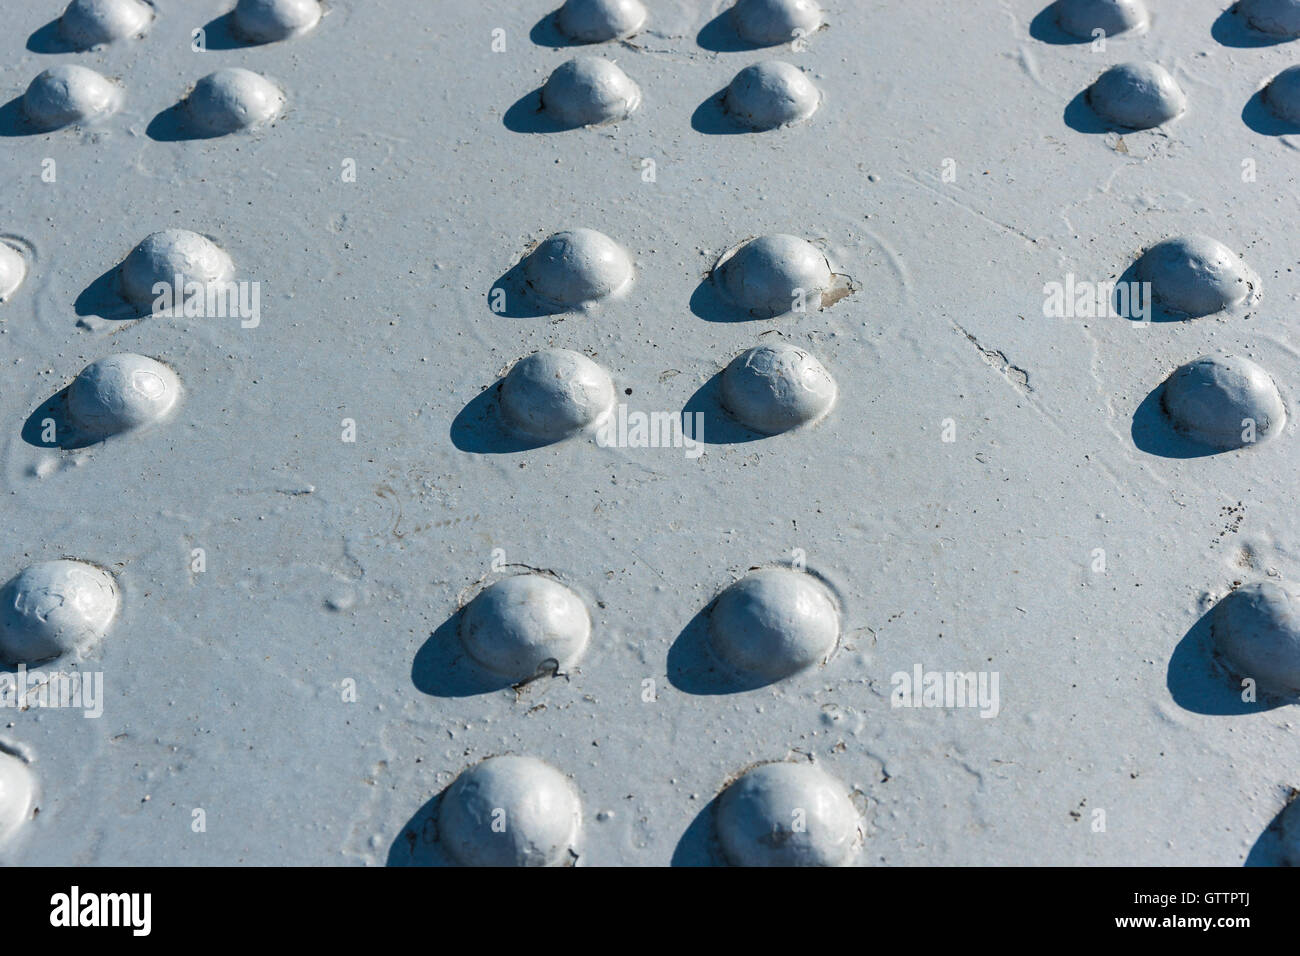 Sonnendurchflutetes grau lackierte Metalloberfläche mit mehreren Reihen von Nietköpfen Stockfoto